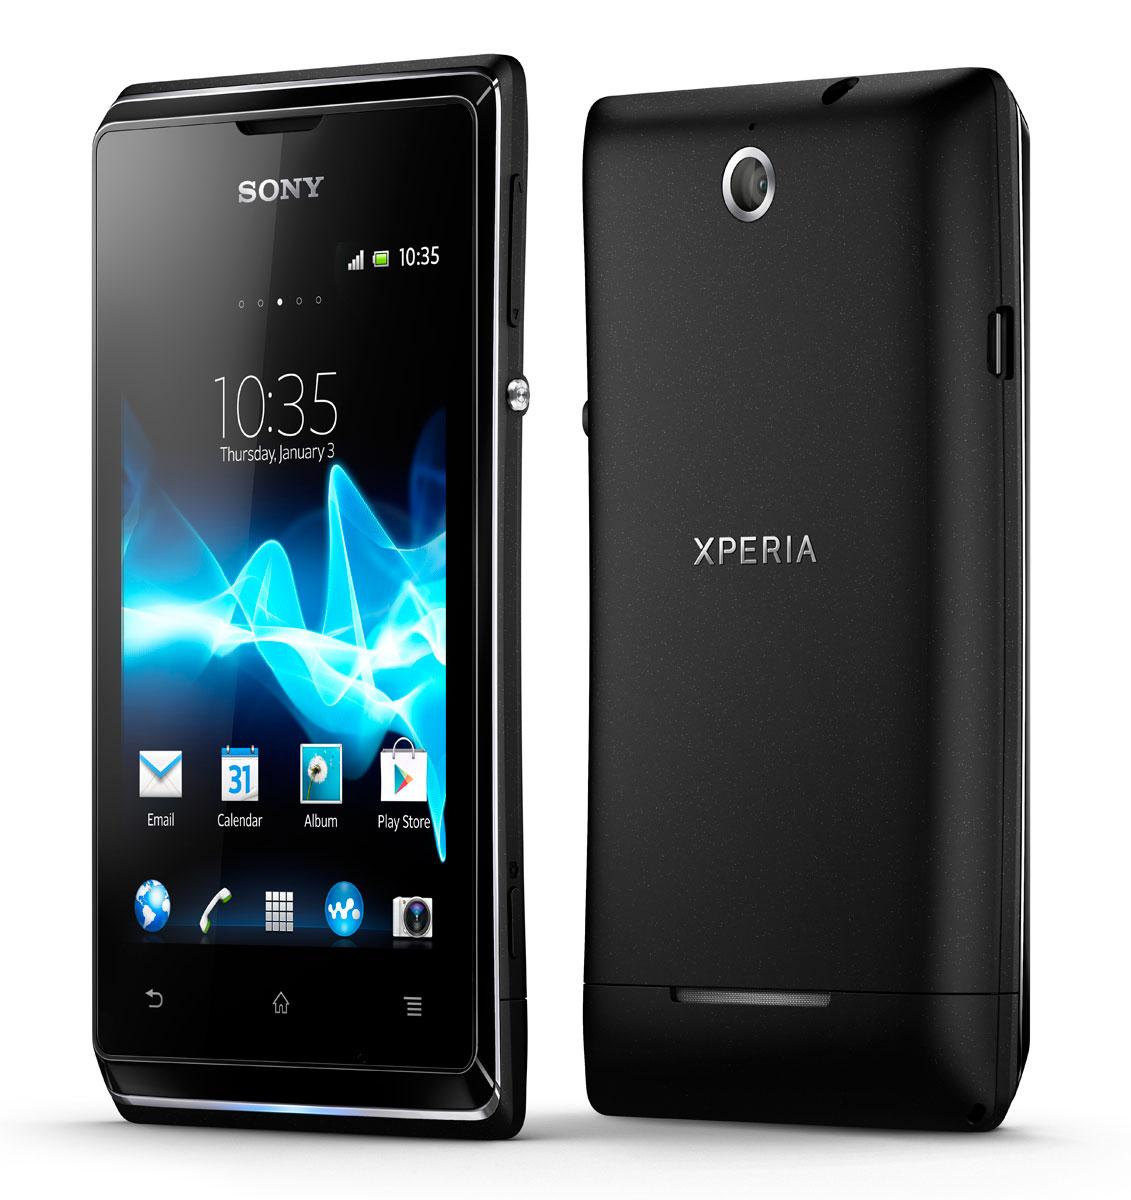 Sony Xperia E vista frontal y trasera en color negro